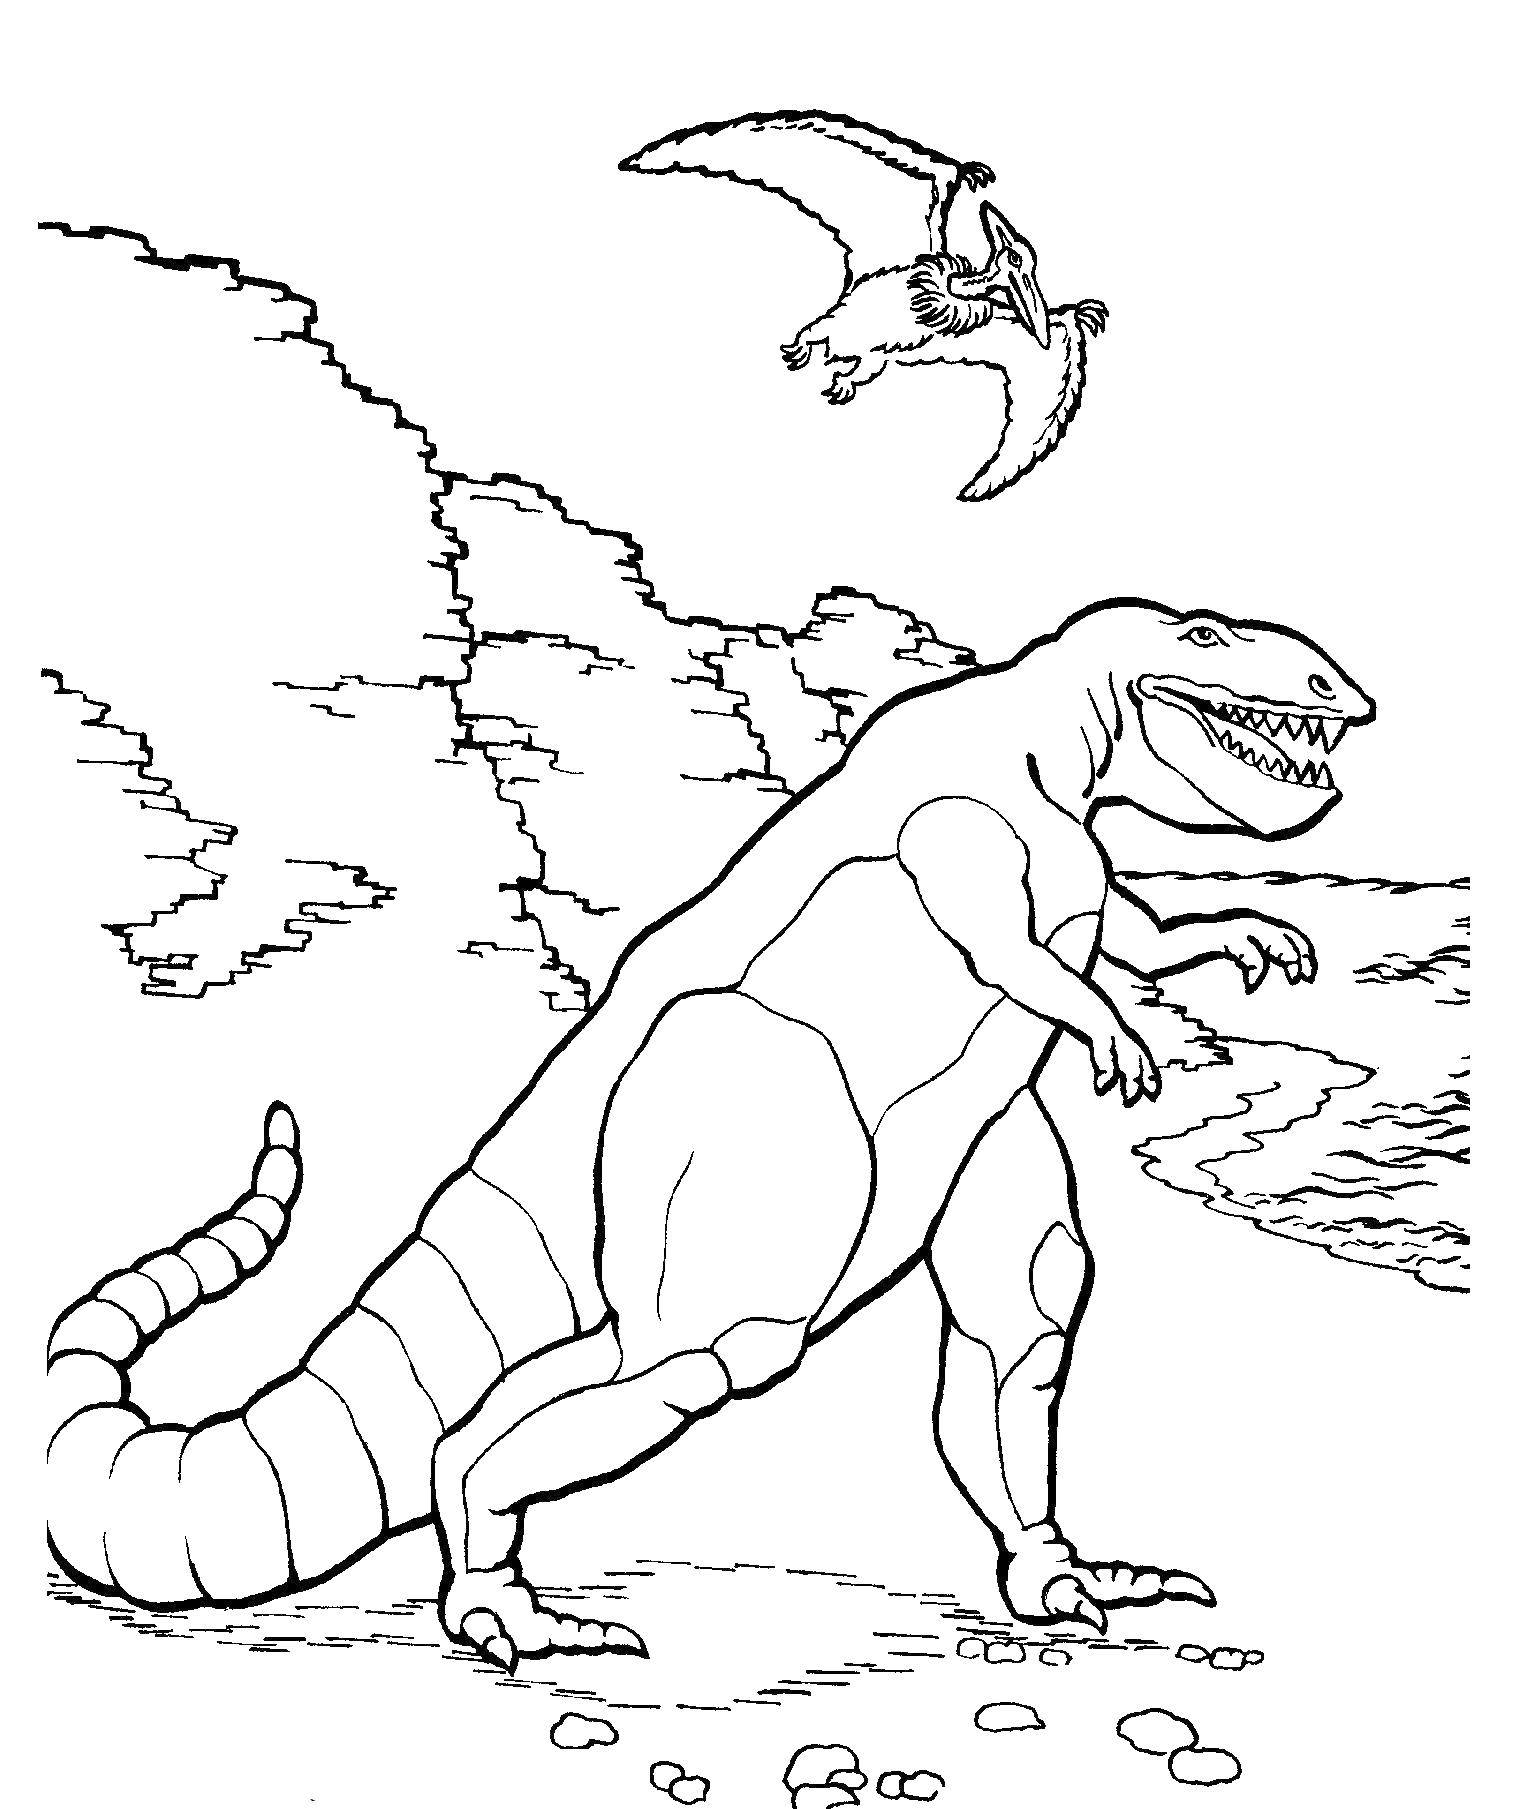 Coloring Dinosaurs. Category dinosaur. Tags:  dinosaur.